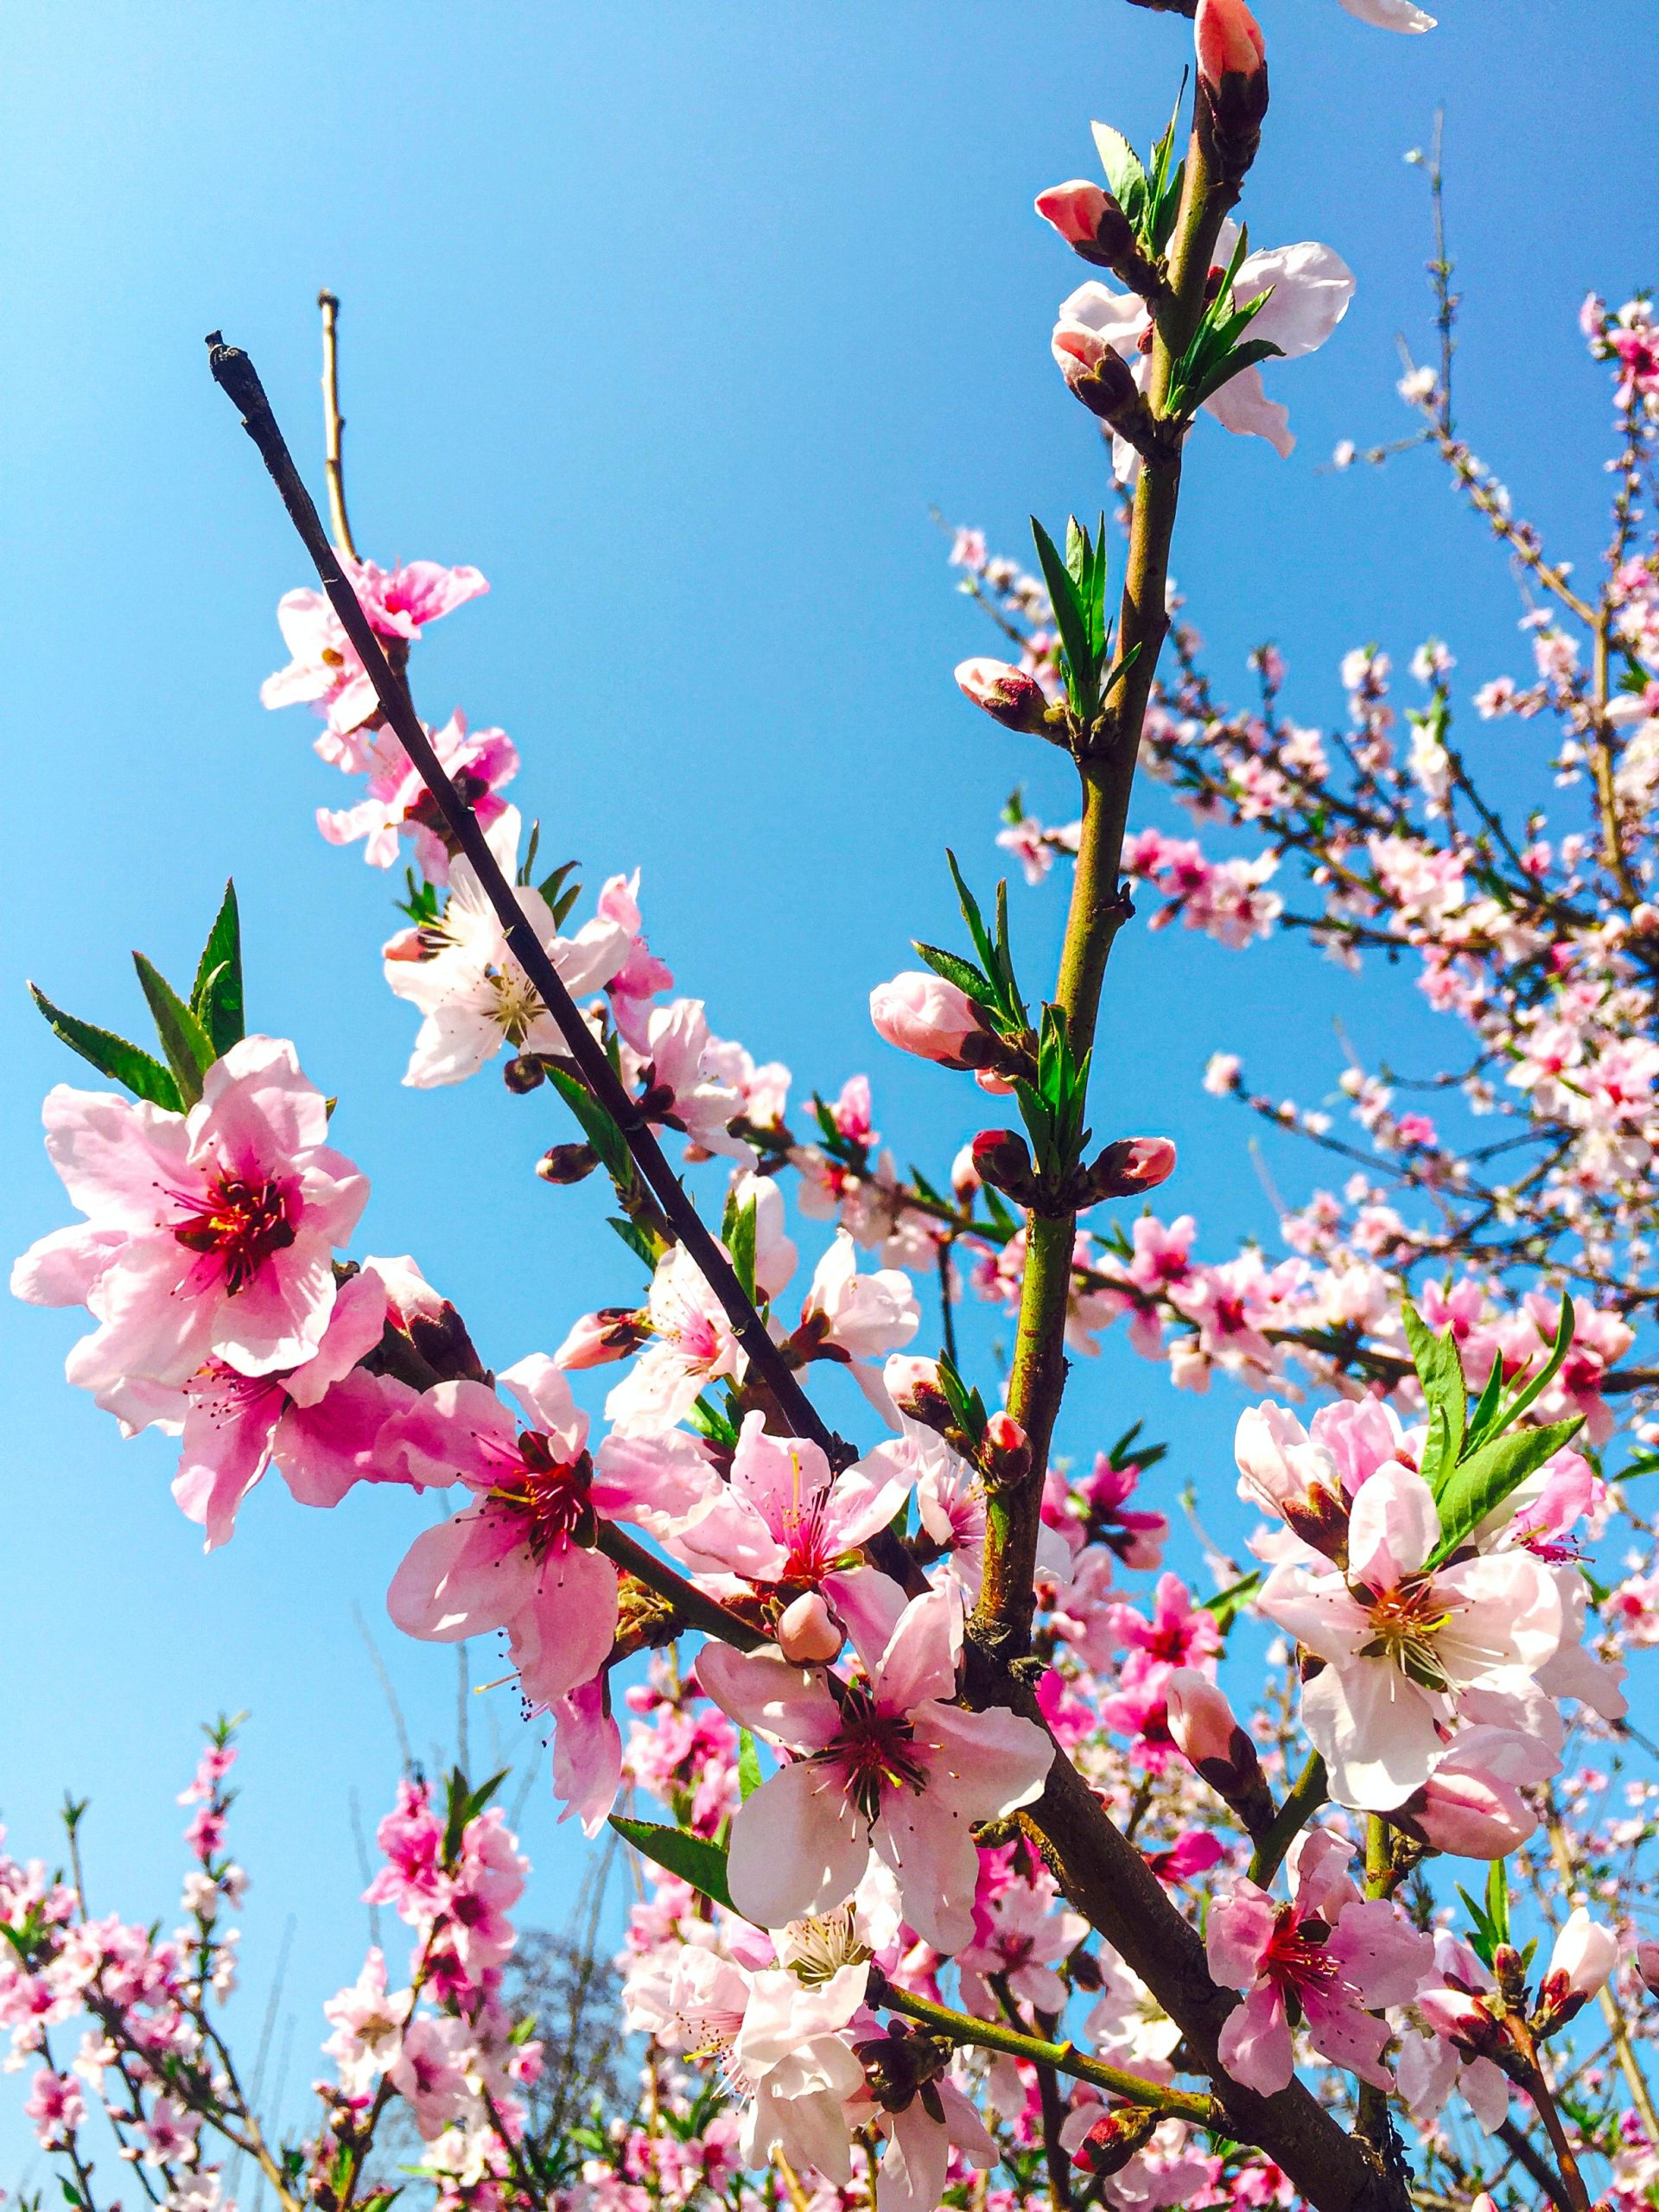 Mỗi mùa xuân về, hoa đào lại thắm tươi sắc hồng rực rỡ khắp các vườn, công viên, đường phố. Những nhánh hoa đầy sức sống và nụ cười tràn đầy hạnh phúc của con người. Hãy dành chút thời gian để ngắm nhìn những đóa hoa đào đẹp từng centimet, bạn sẽ tìm thấy niềm vui và sự bình yên trong đó.